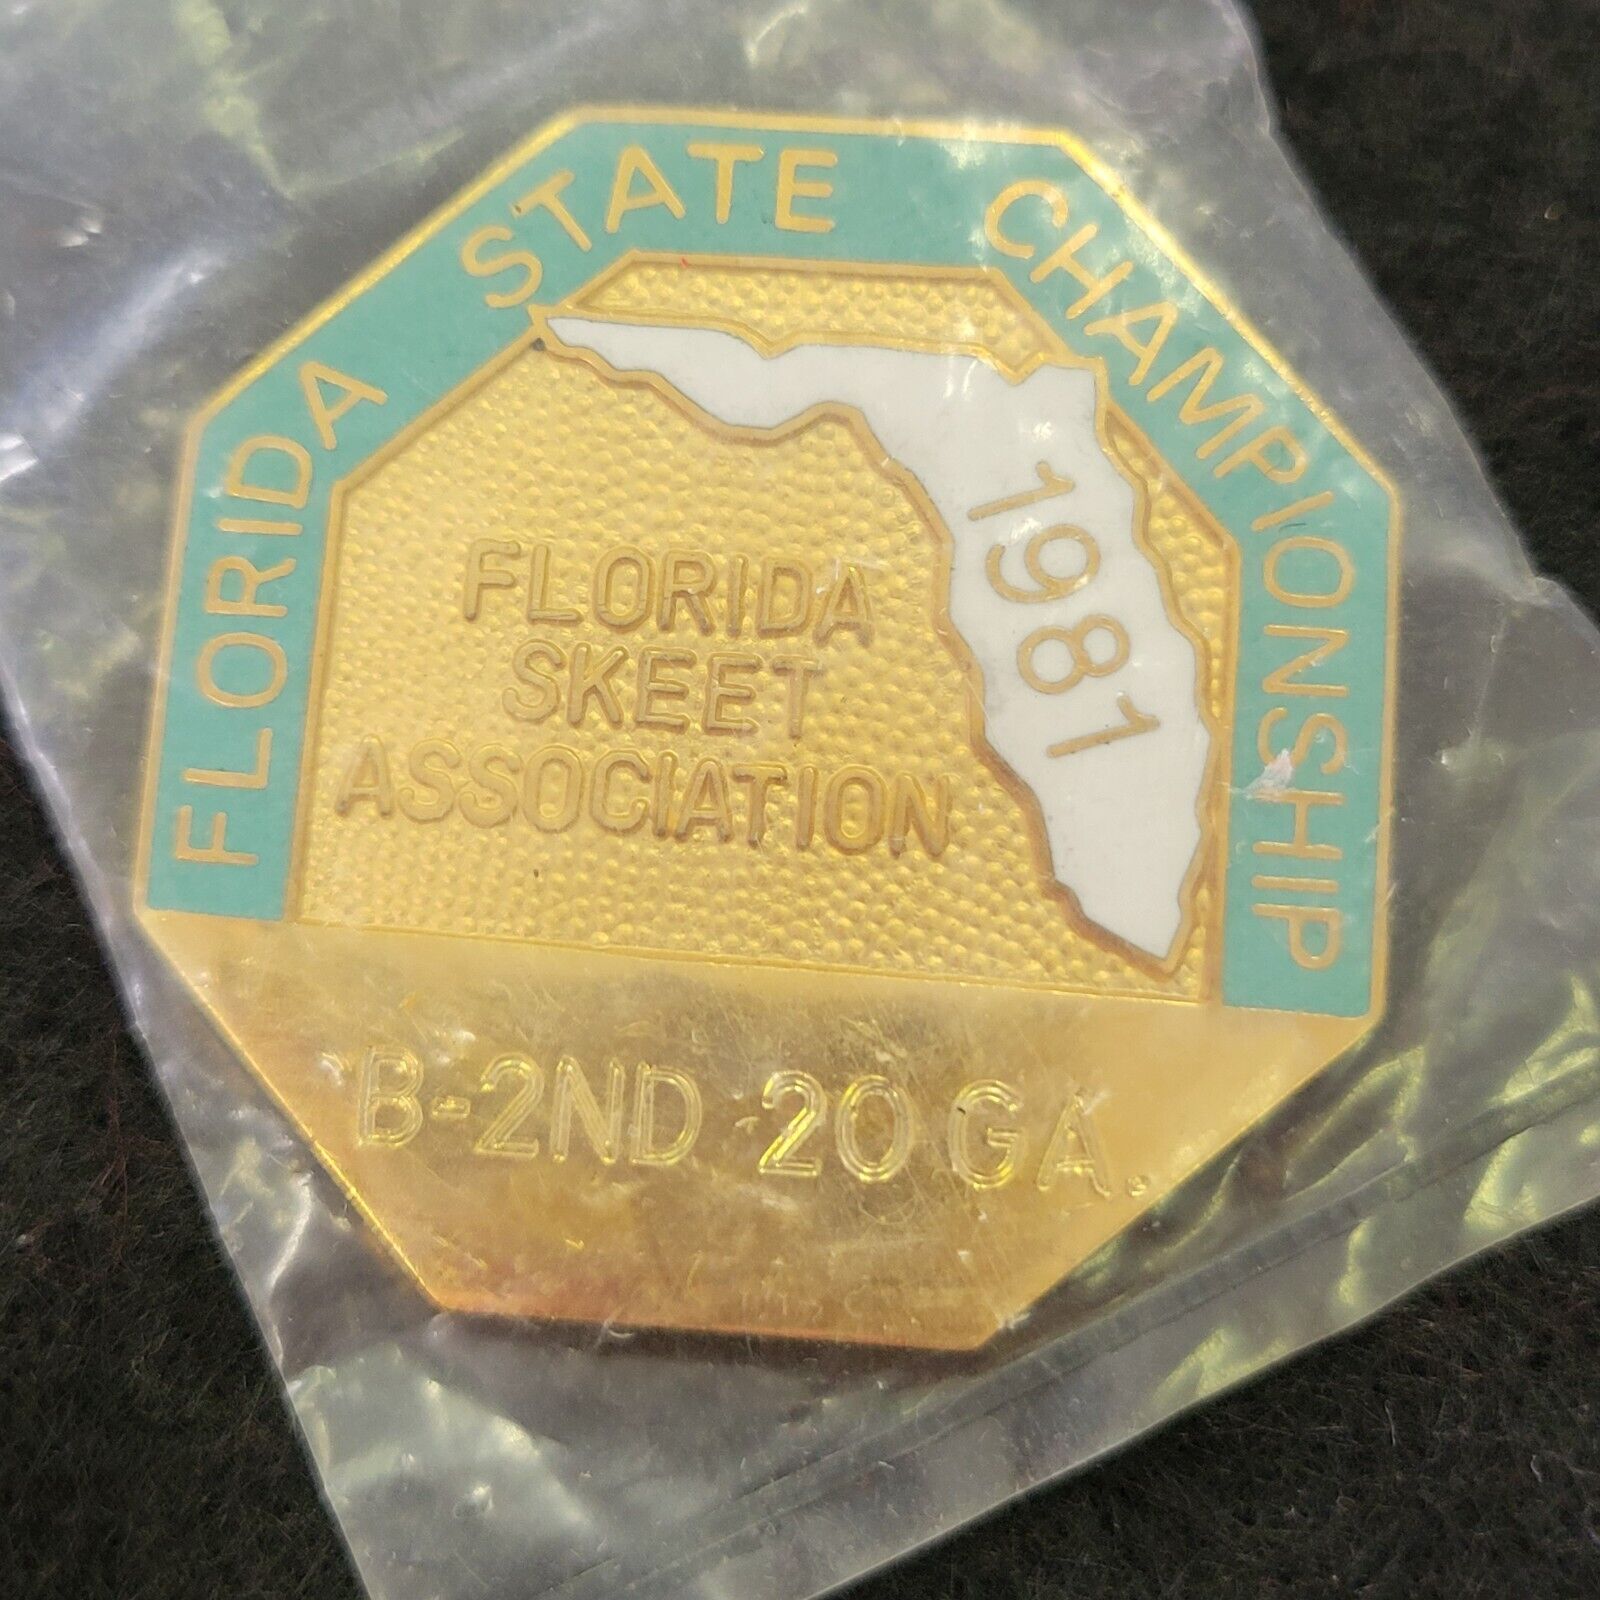 1981 Florida State Championship Skeet Association B 2ND 20 GA Lapel Badge Pin